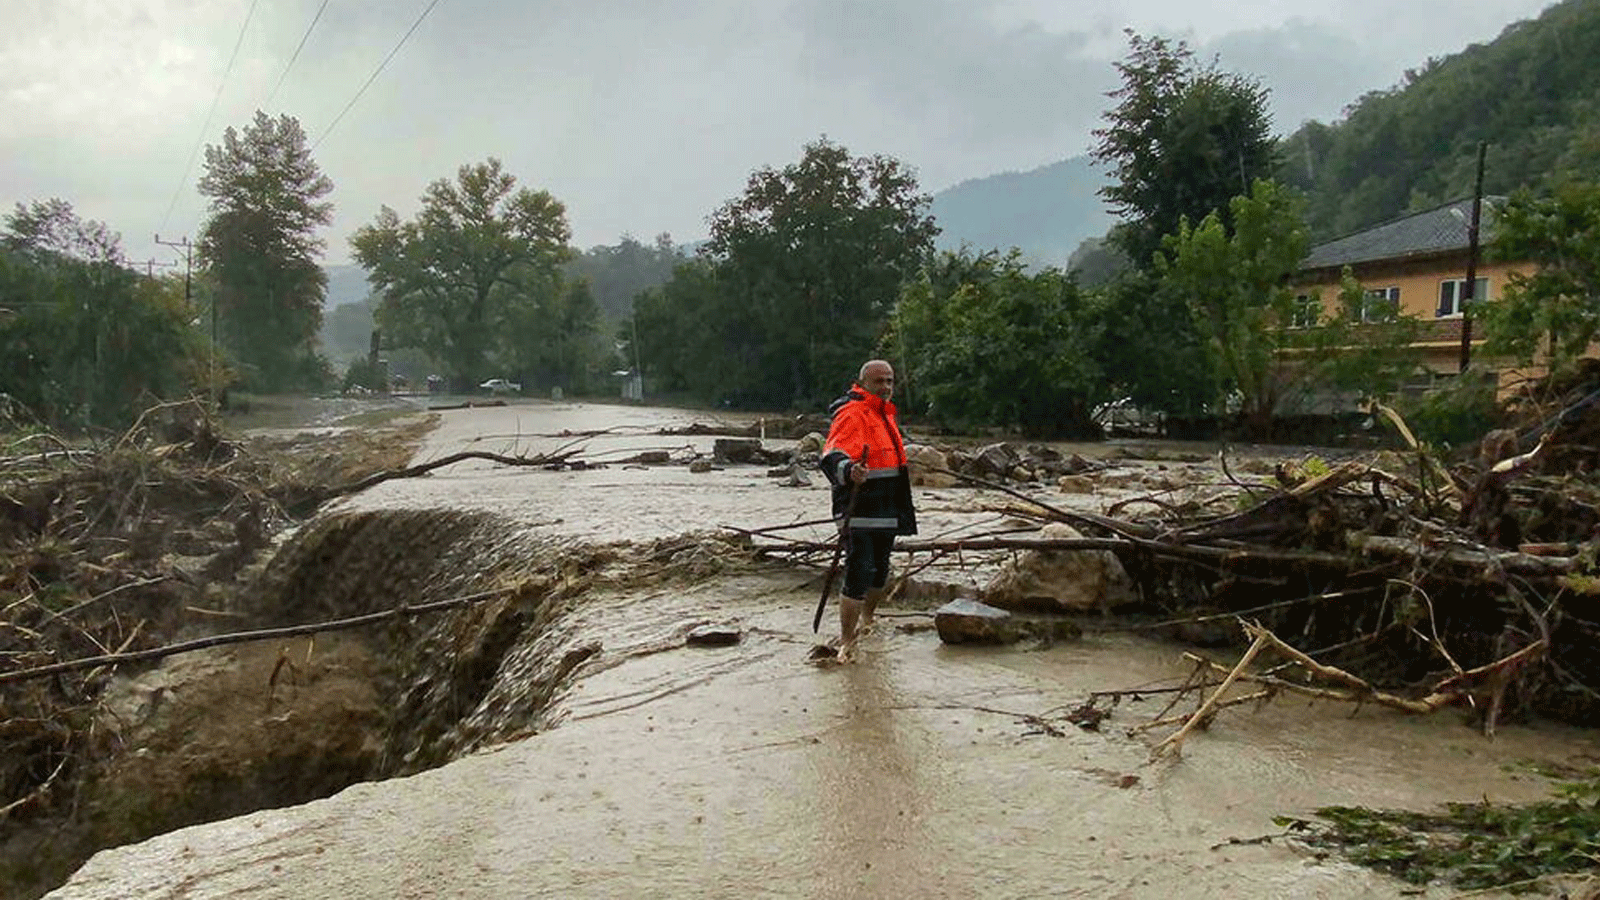 فيضانات مفاجئة حولت الشوارع إلى أنهار جارية وأدت إلى الانهيارات الطينية التي تسببت في التواء الطرق